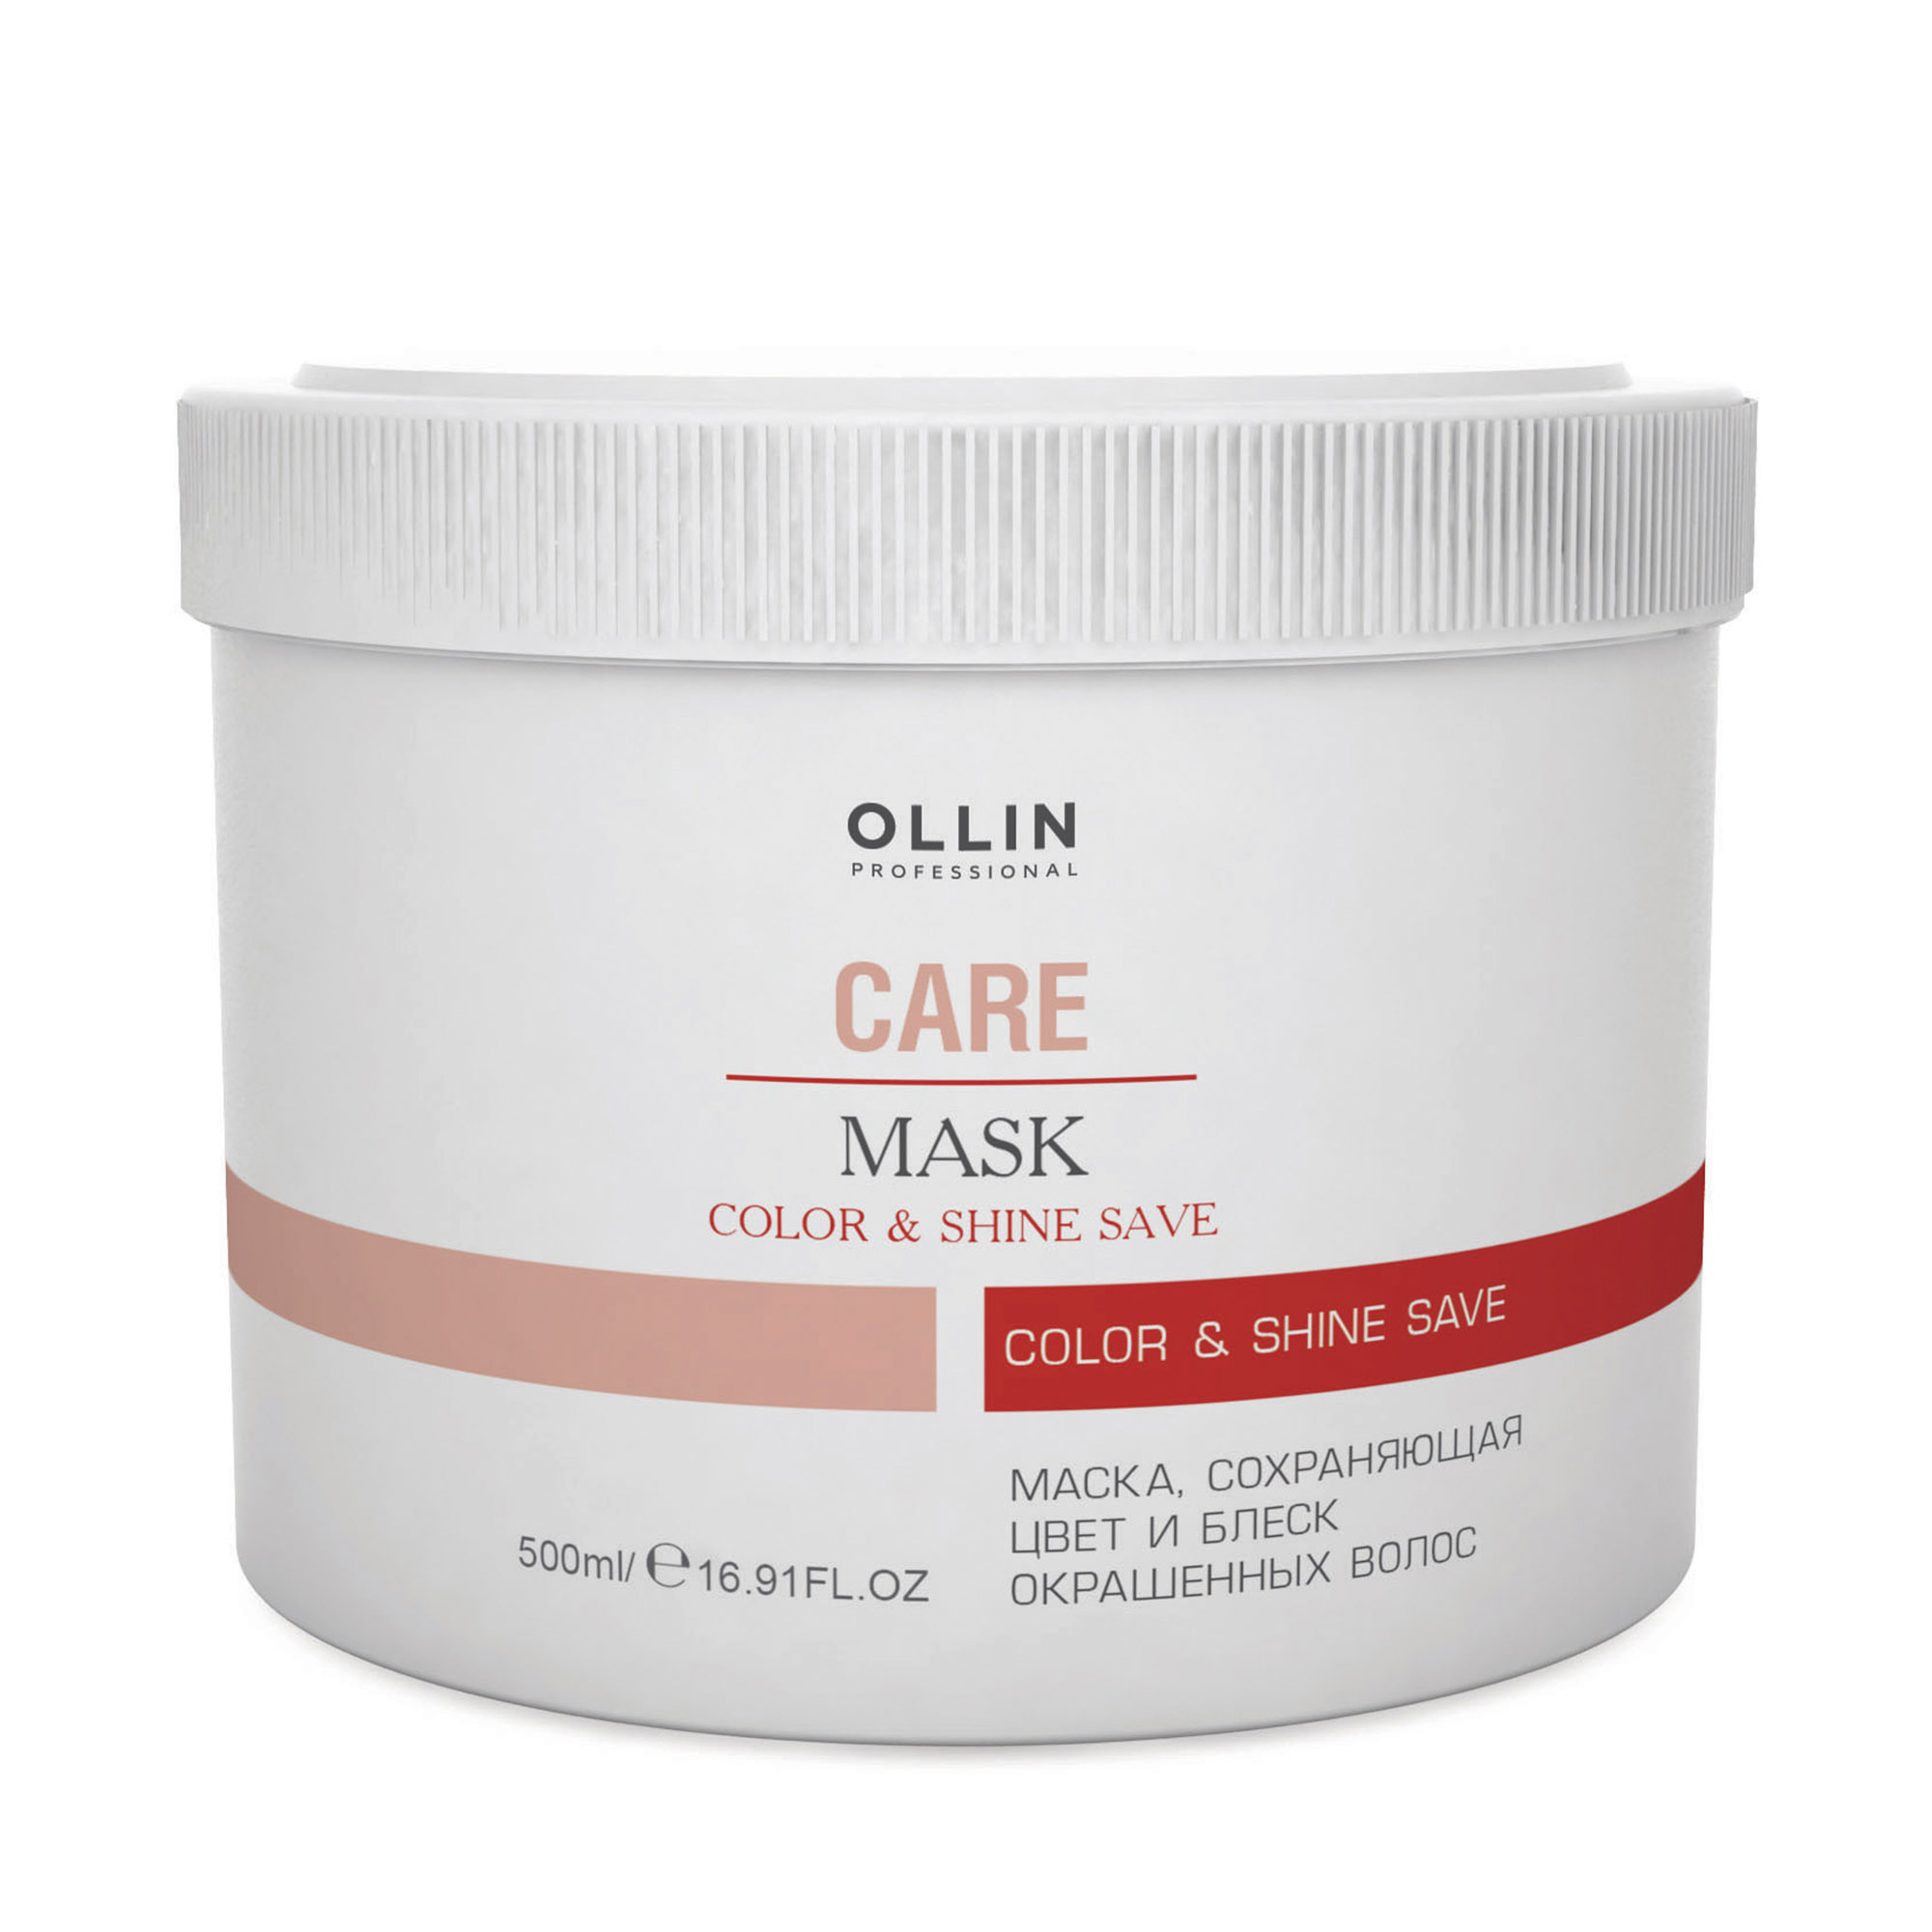 Маска Ollin Professional  Care Color and Shine Save сохраняющий цвет и блеск окрашенных волос 500 мл маска блеск лоск объем